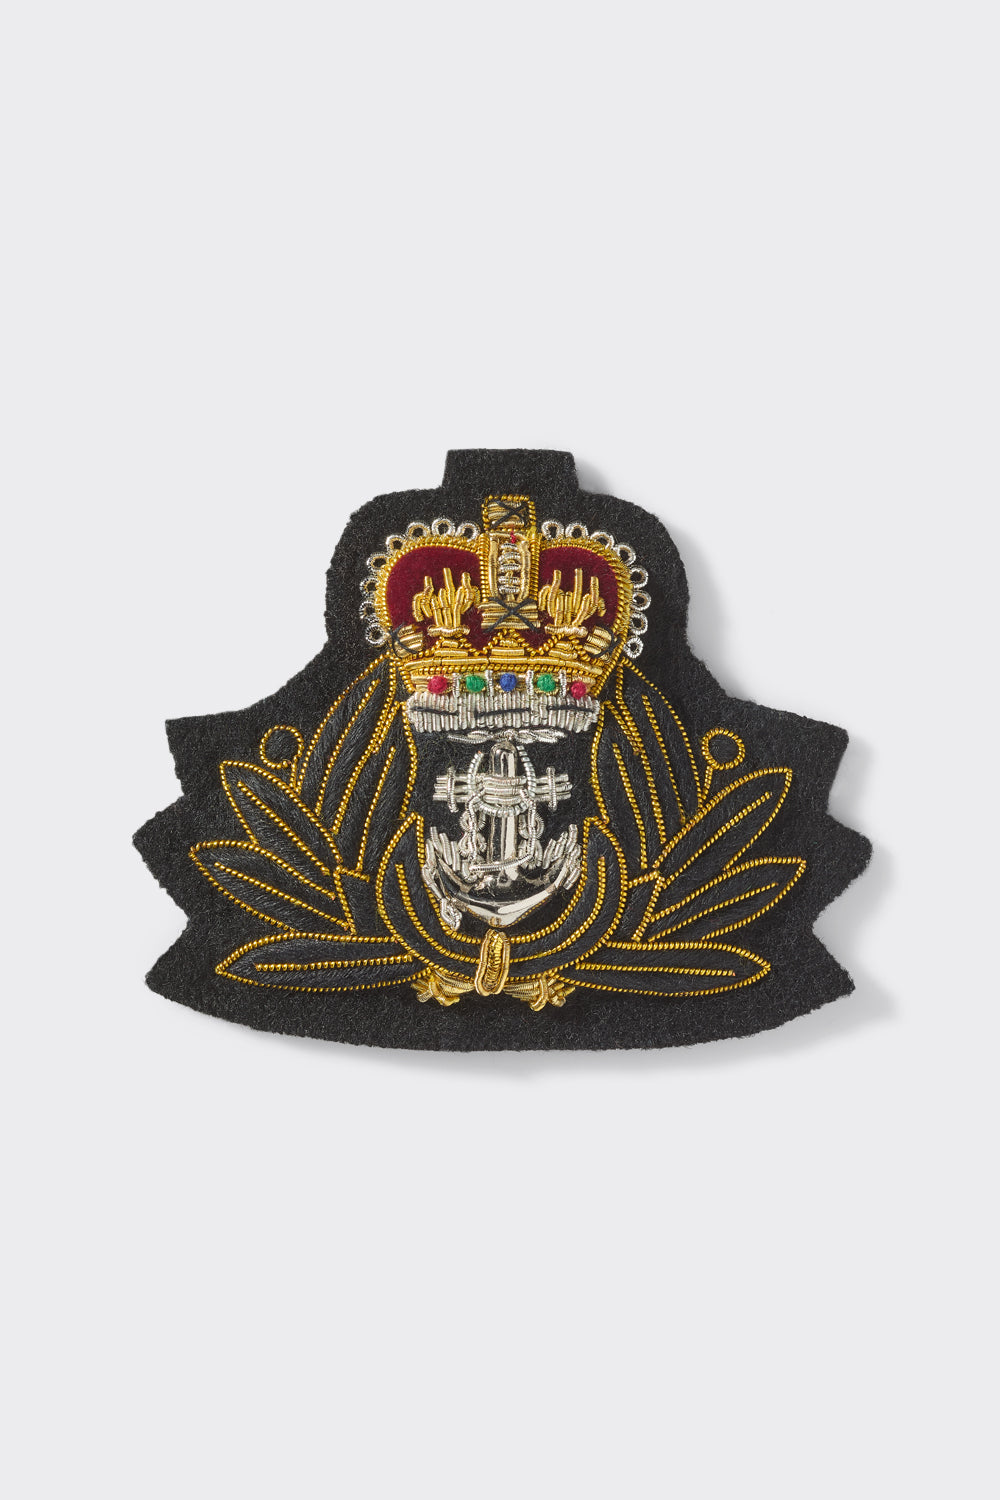 Royal Navy Chaplains Beret Badge